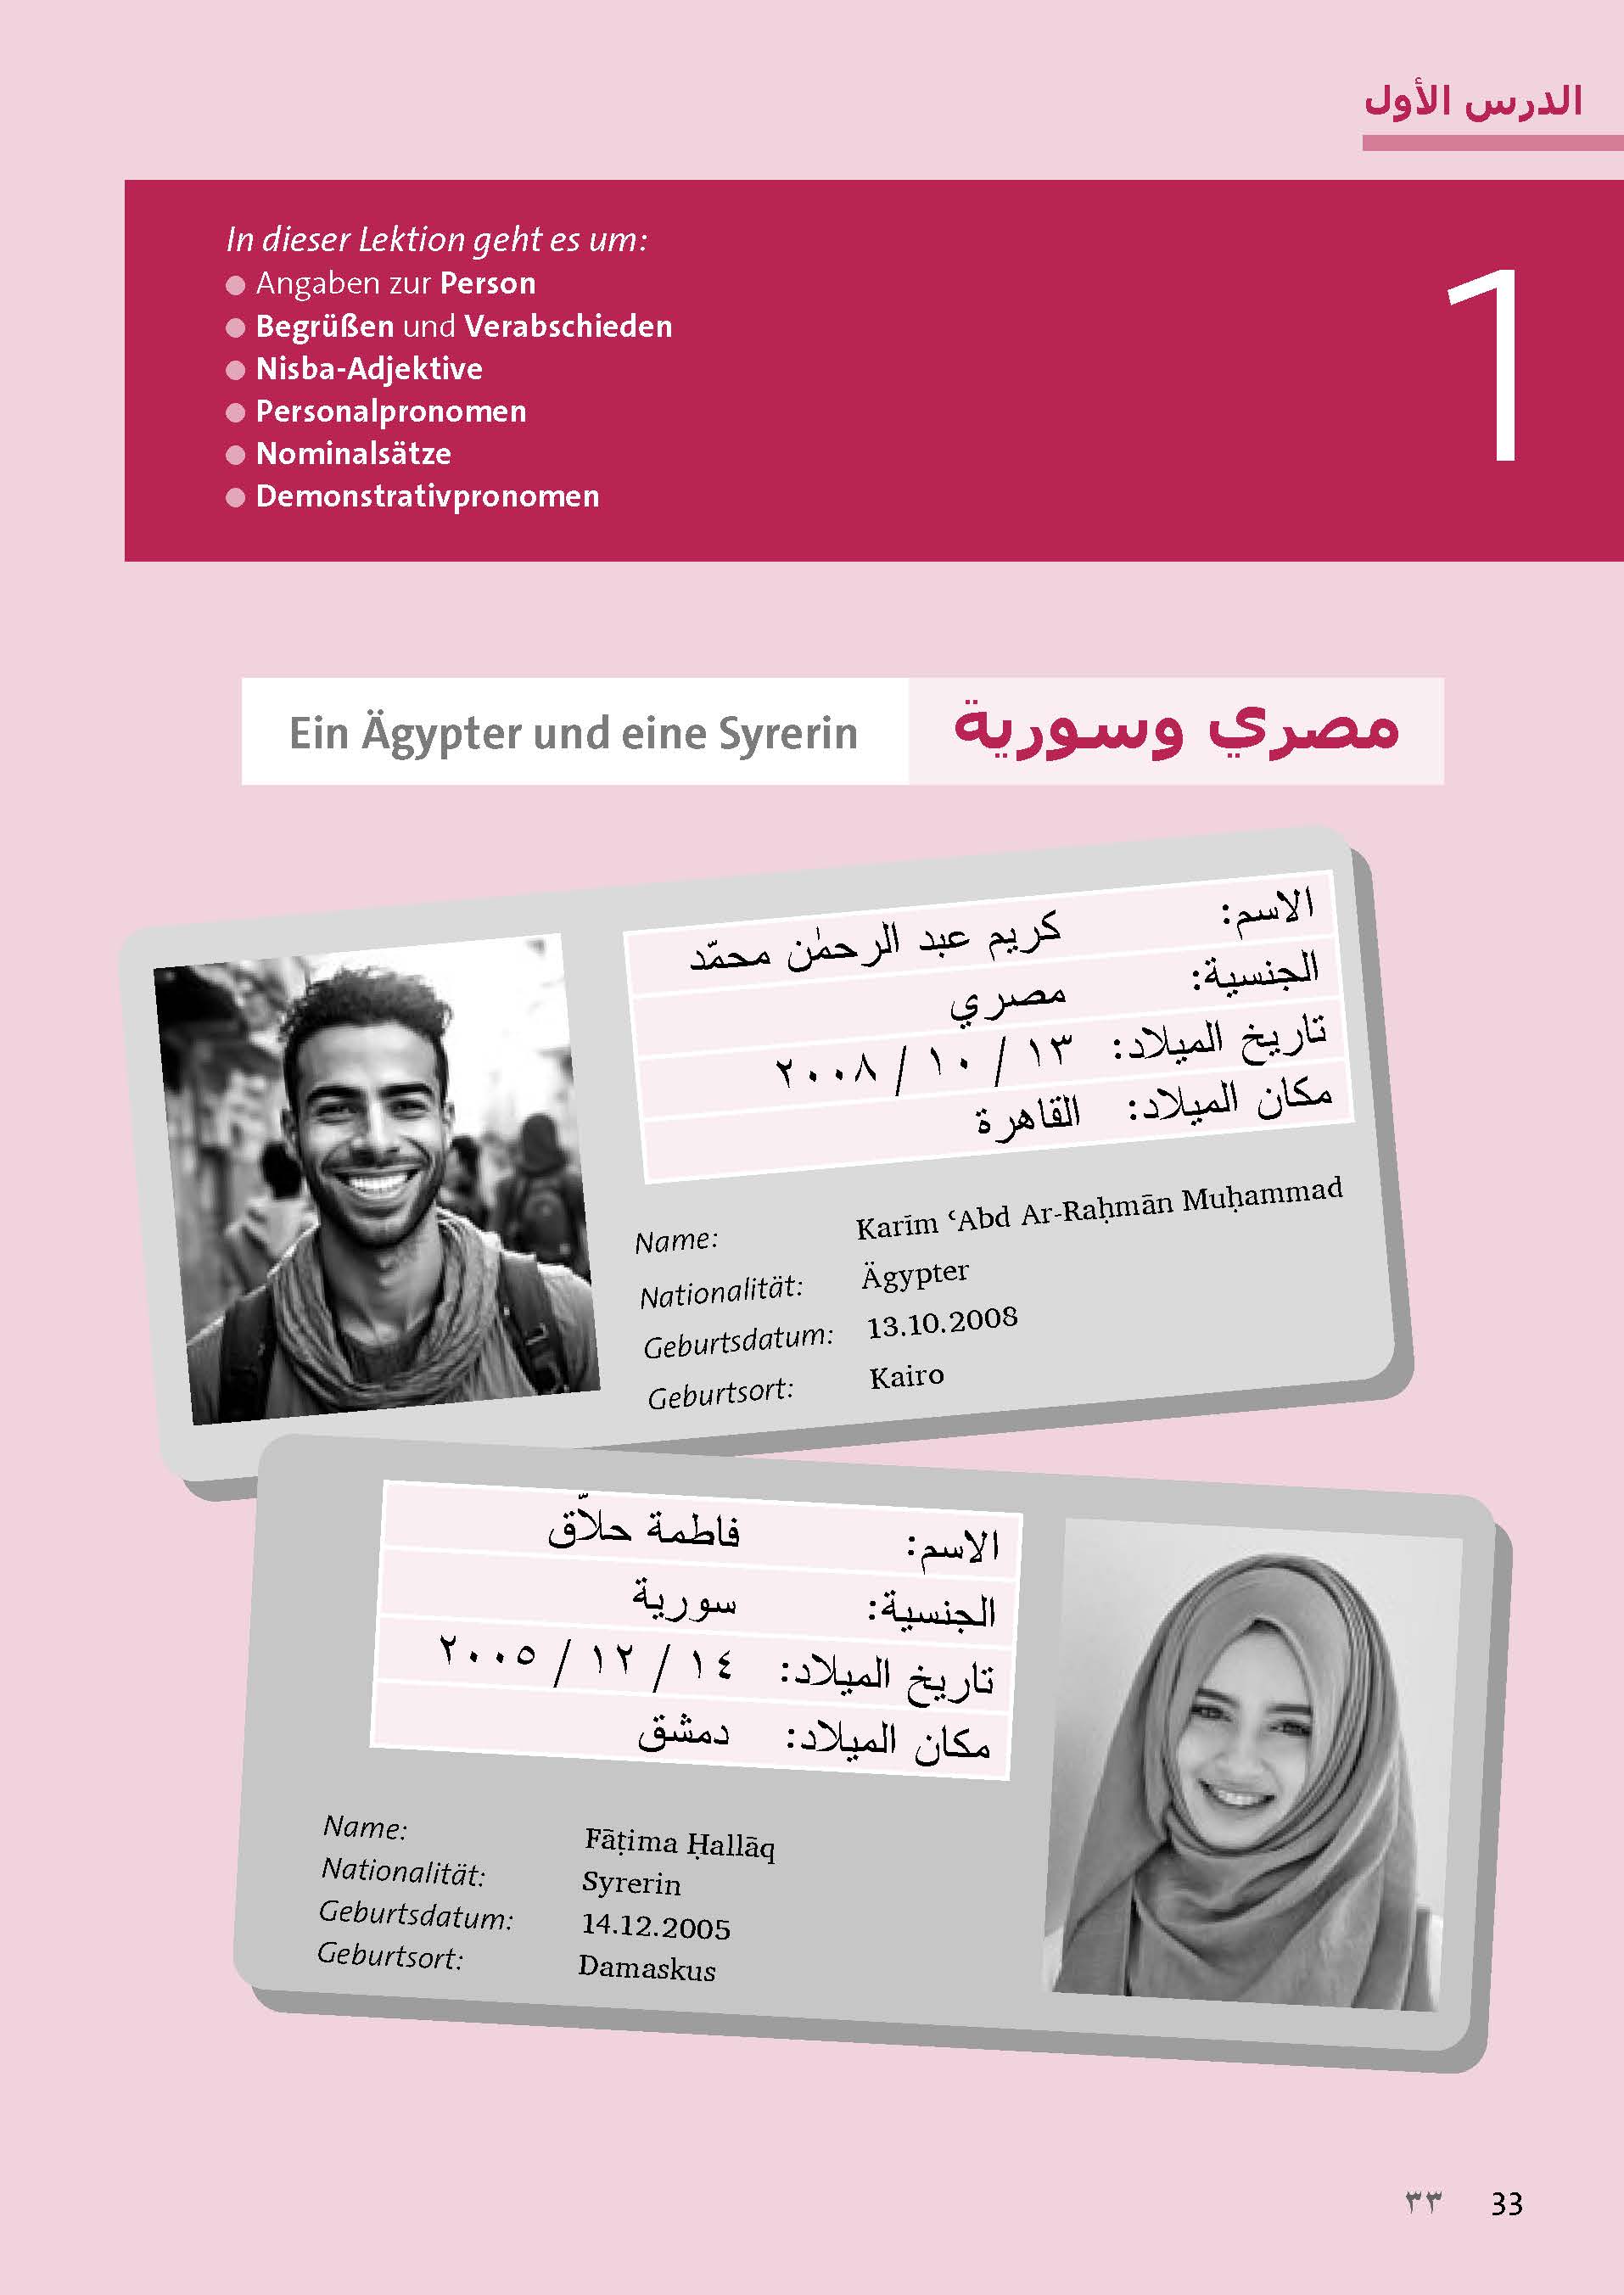 Langenscheidt Sprachkurs mit System Arabisch